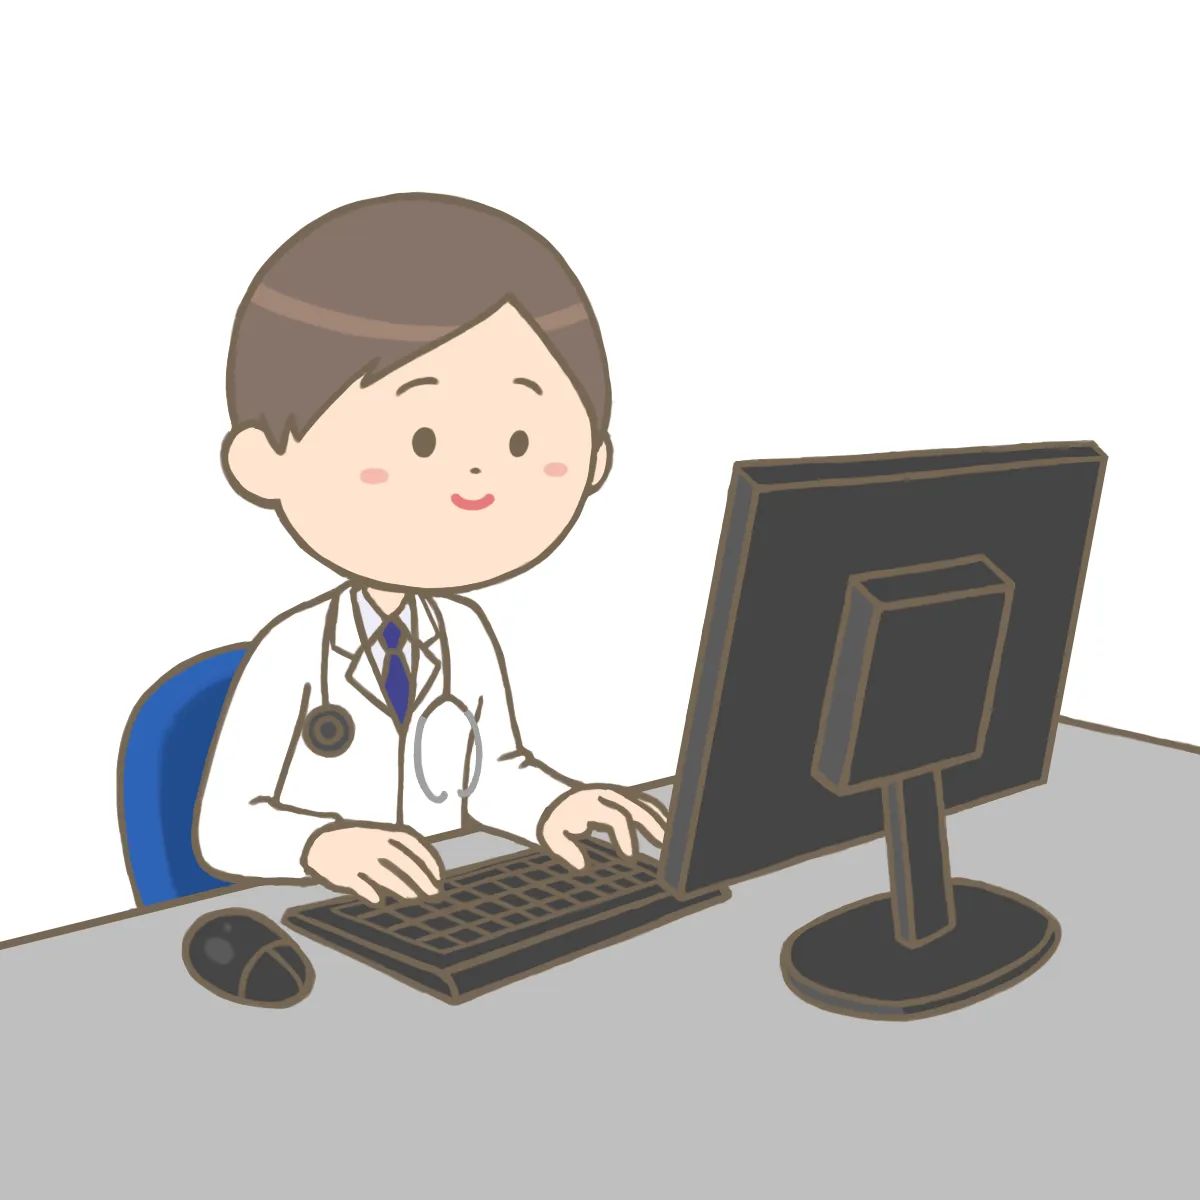 「パソコン(デスクトップPC)を操作している医師のイラストです。 #フリーイラスト」|看護師🎨イラスト集＠看護roo!のイラスト